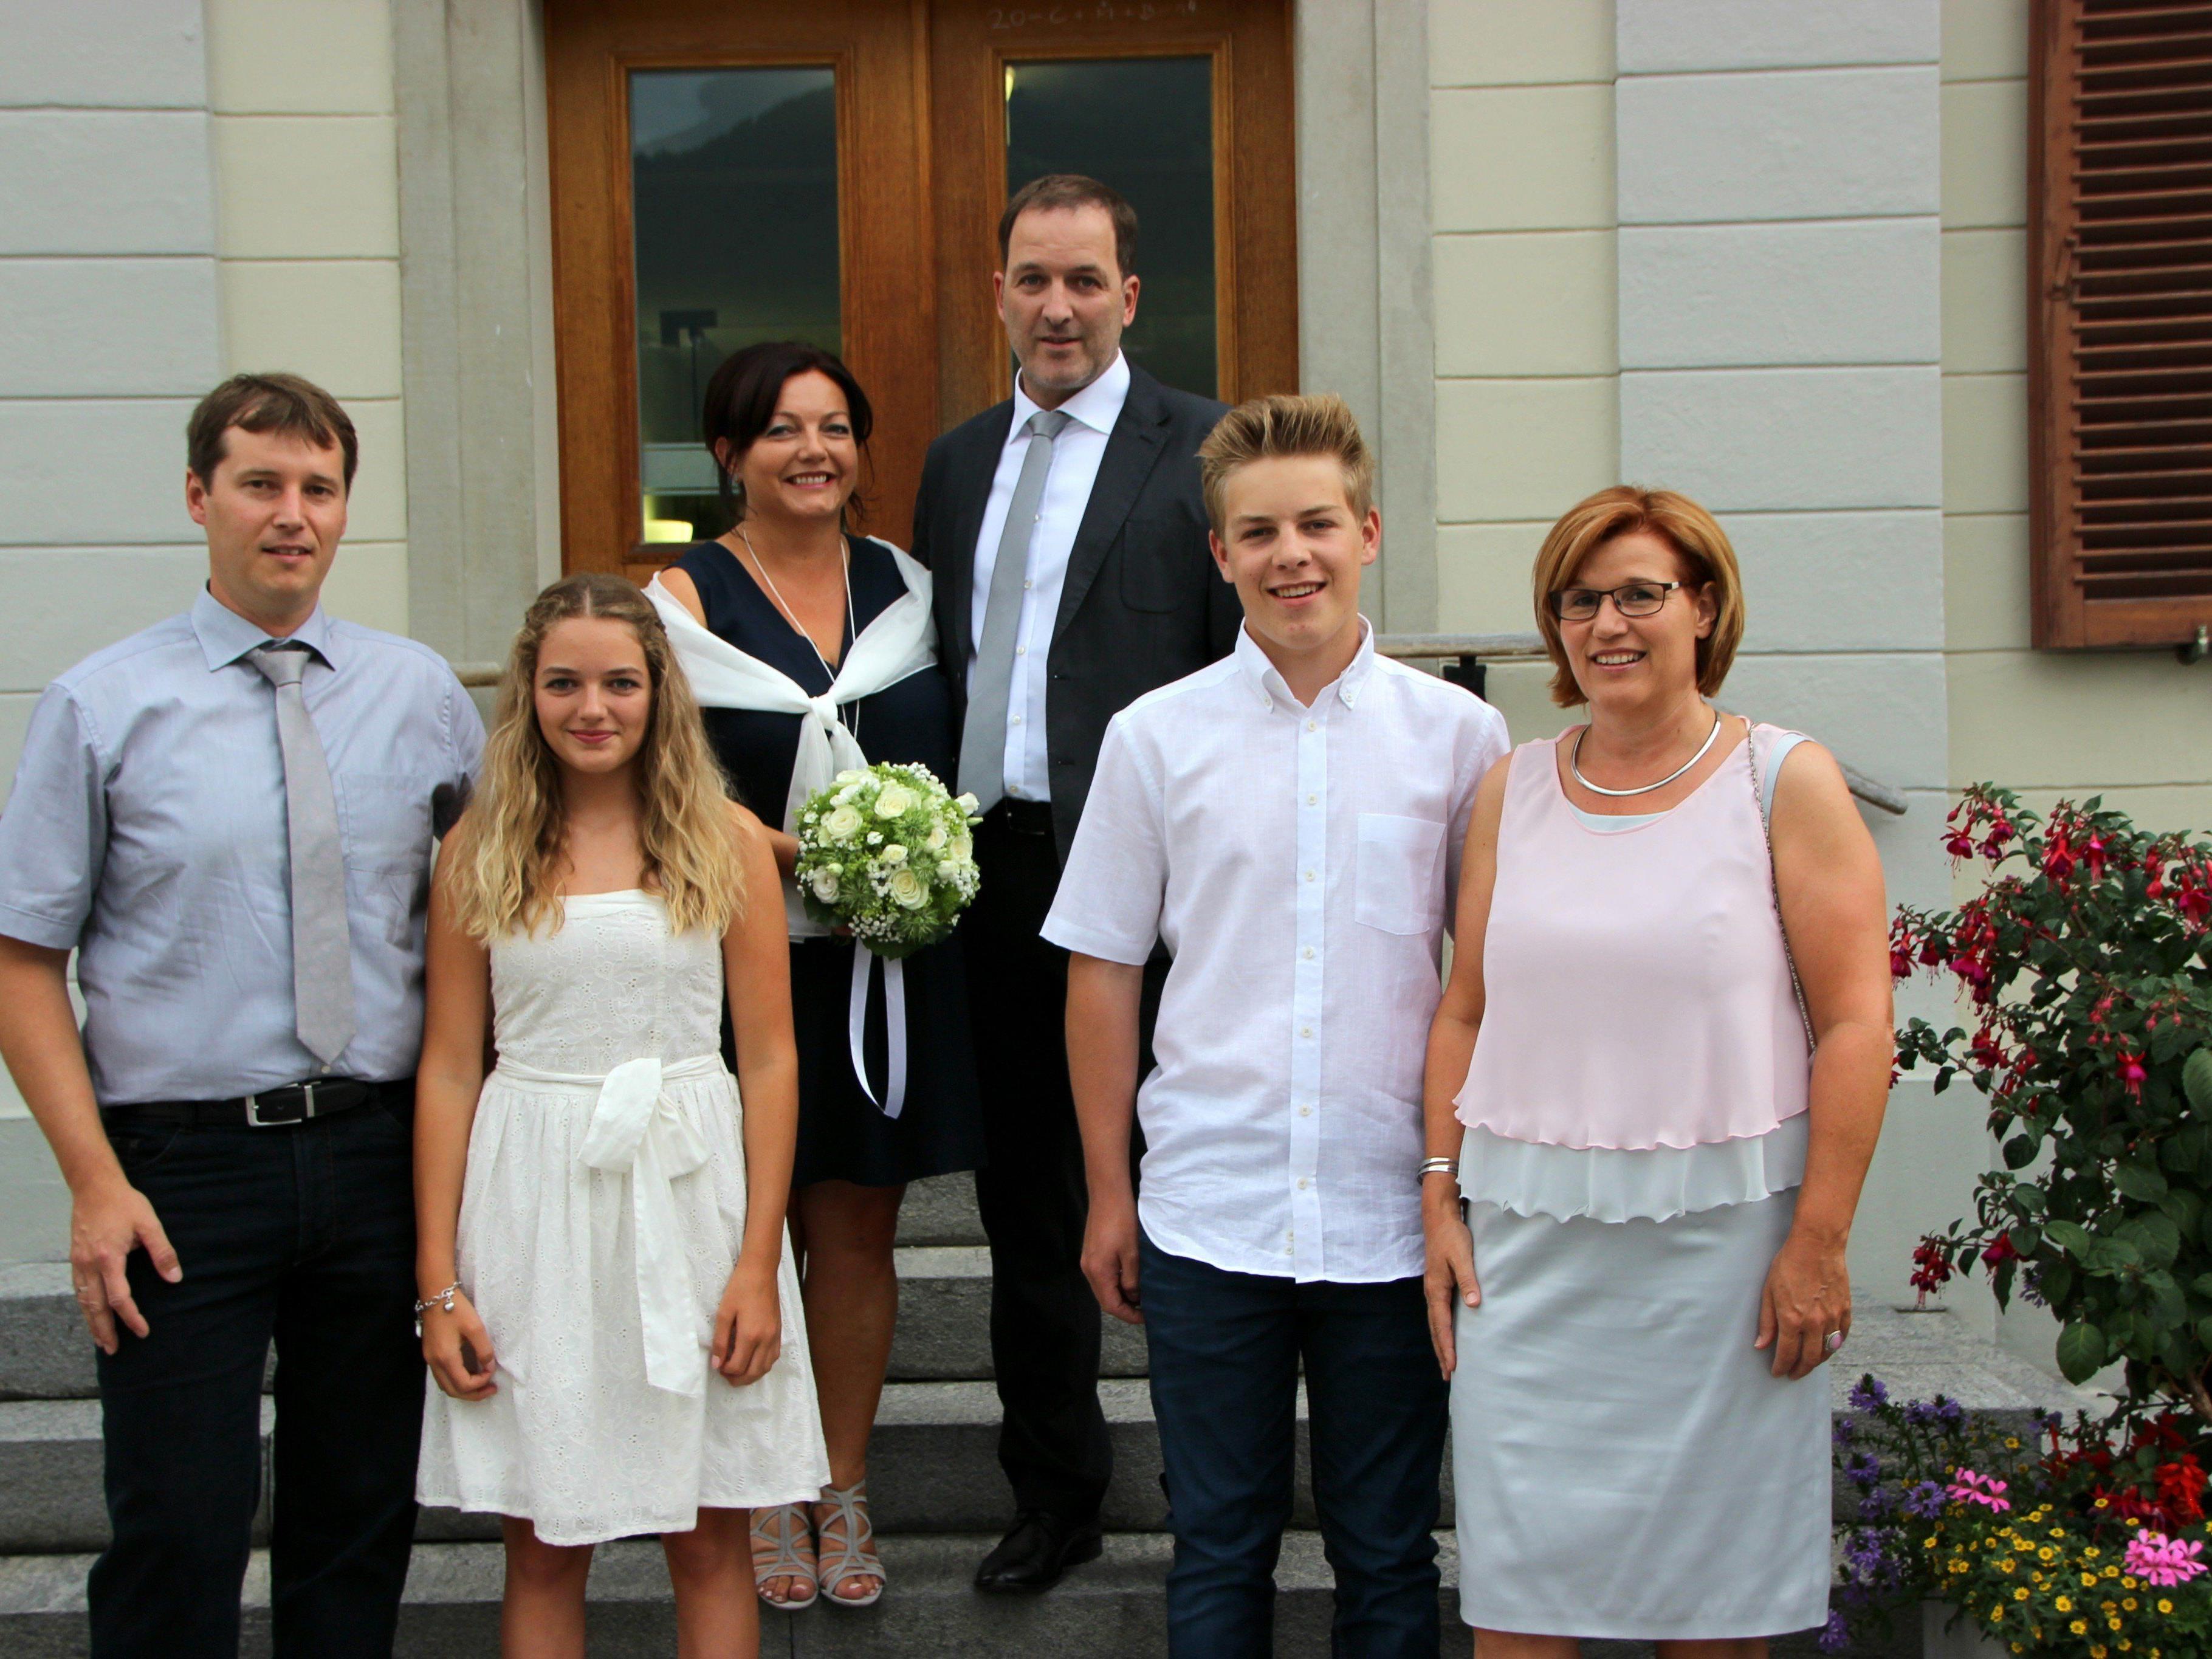 Marion Küng und Martin Tschabrun freuten sich mit ihren Kindern und ihren Trauzeugen ihre standesamtliche Vermählung zu feiern.